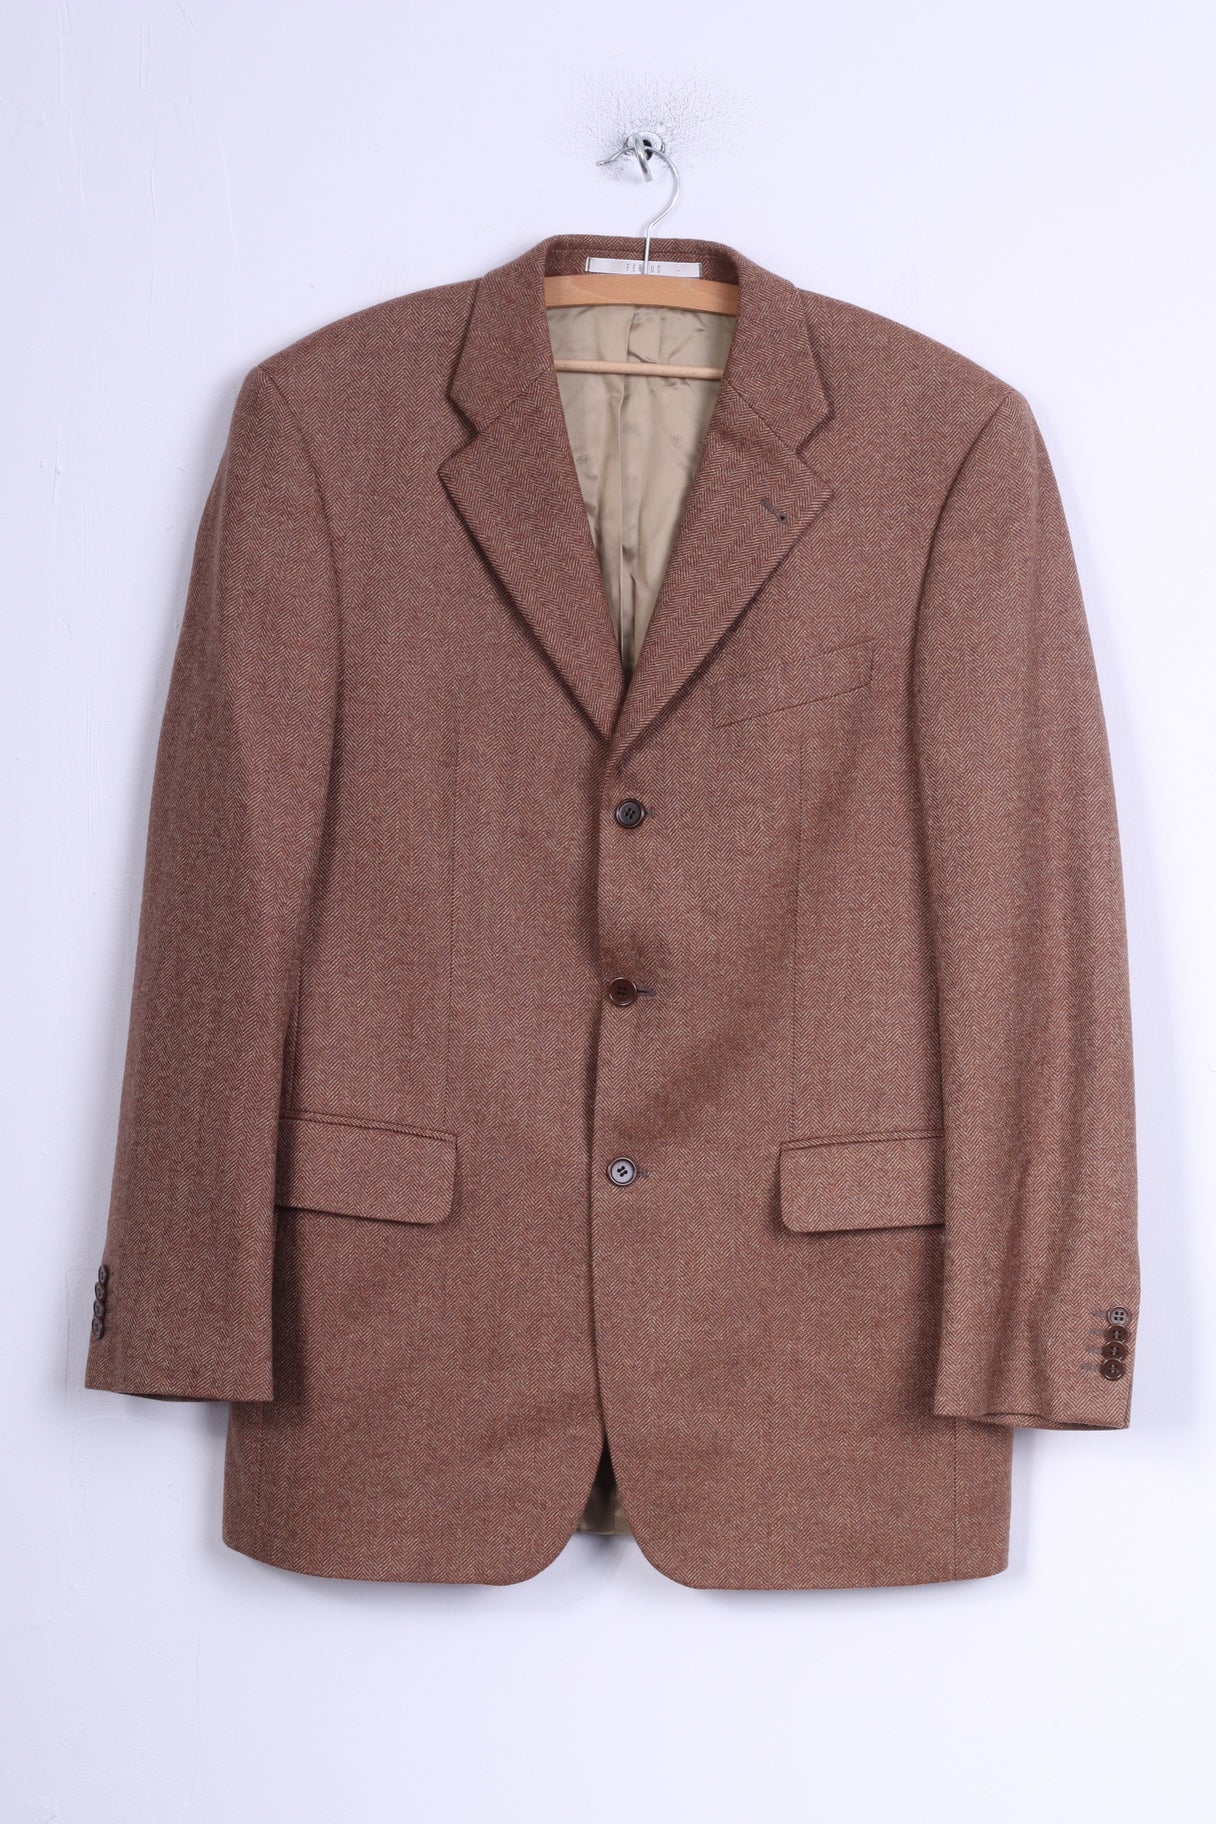 Feraud Mens 98 M Jacket Brown Wool Herringbone Single Breasted Blazer